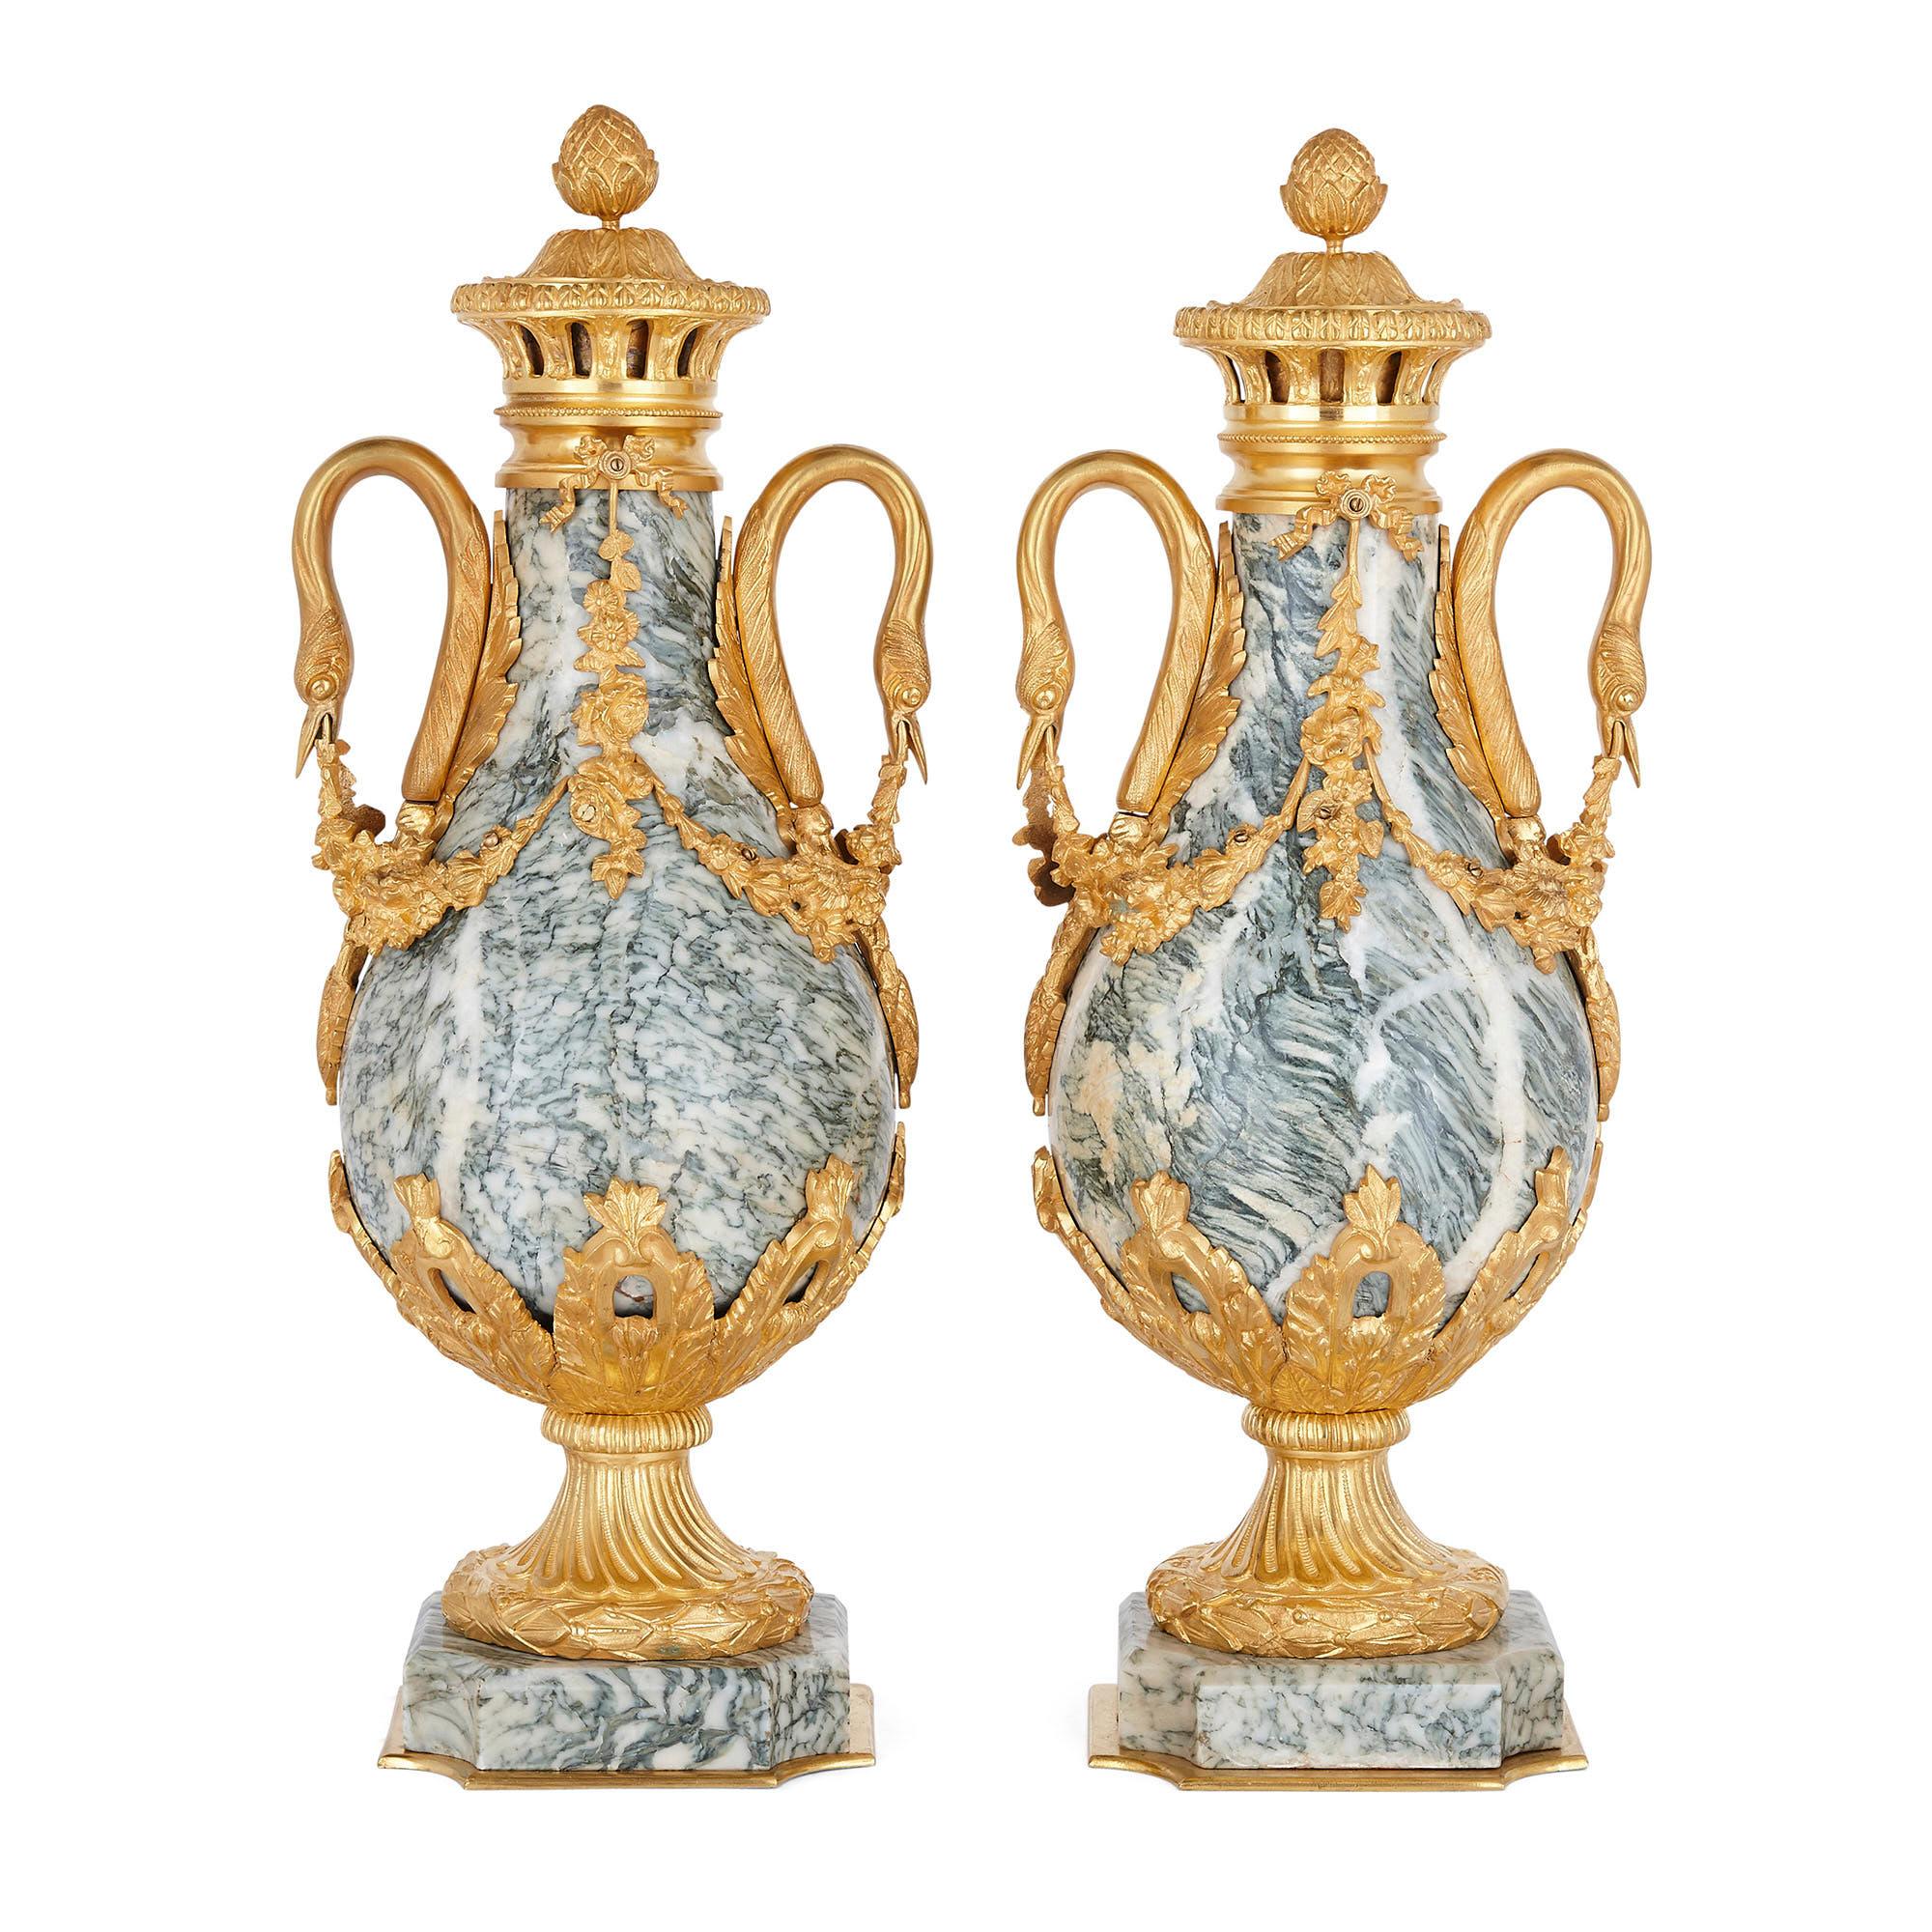 Paar Vasen aus vergoldeter Bronze und Marmor im neoklassischen Stil
Französisch, Anfang 20. Jahrhundert
Maße: Höhe 52cm, Breite 21cm, Tiefe 19cm

Jede Vase dieses Paars ist aus vergoldeter Bronze und grauem Marmor gefertigt und hat die für den